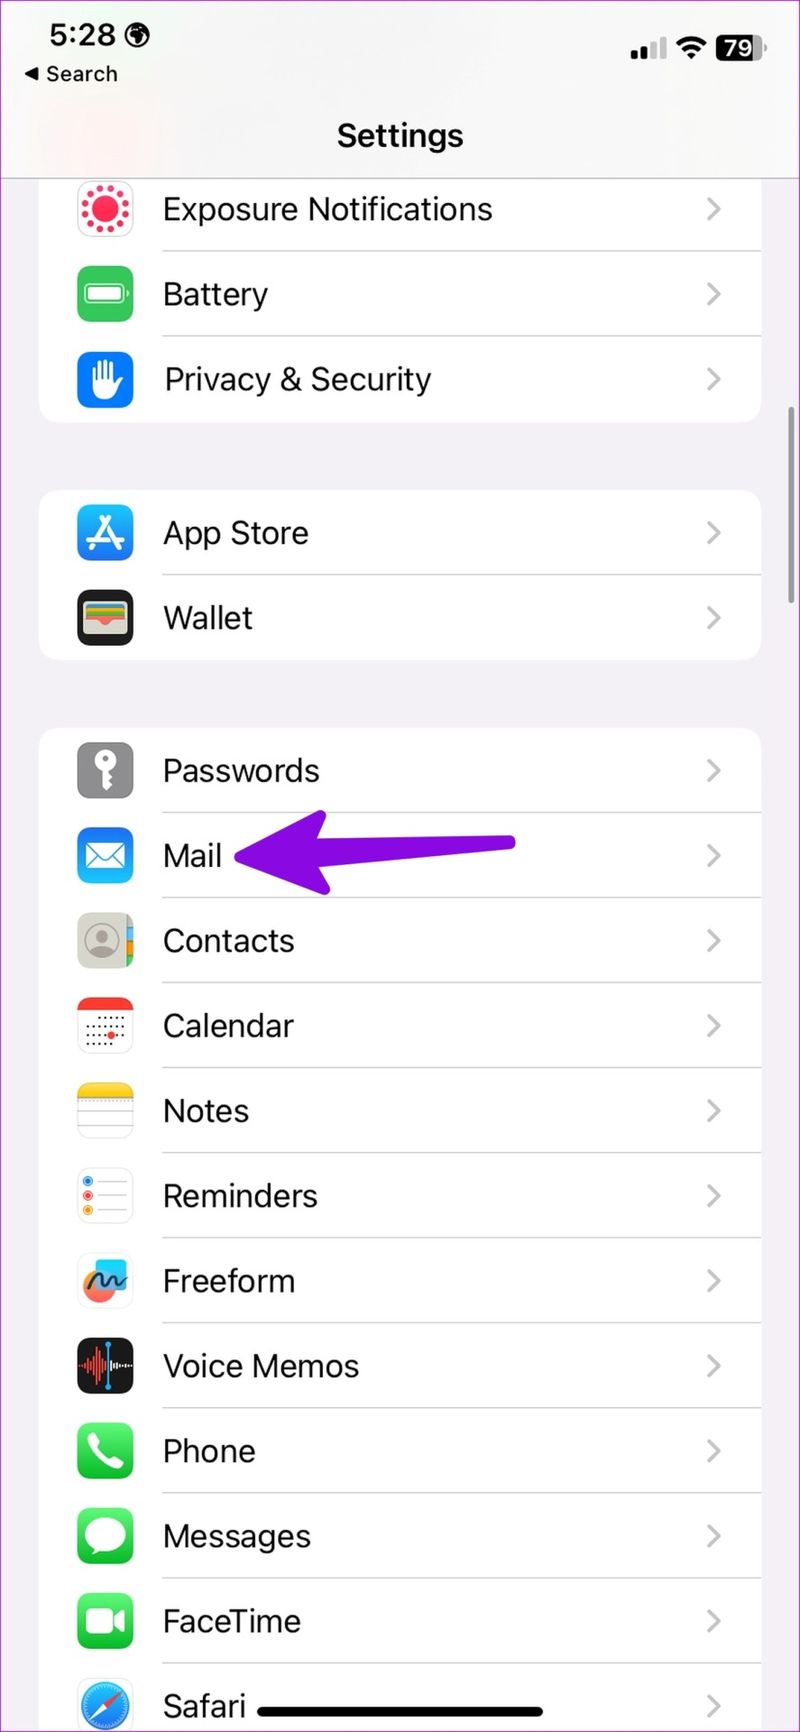 Öffnen Sie die Mail-App auf dem iPhone